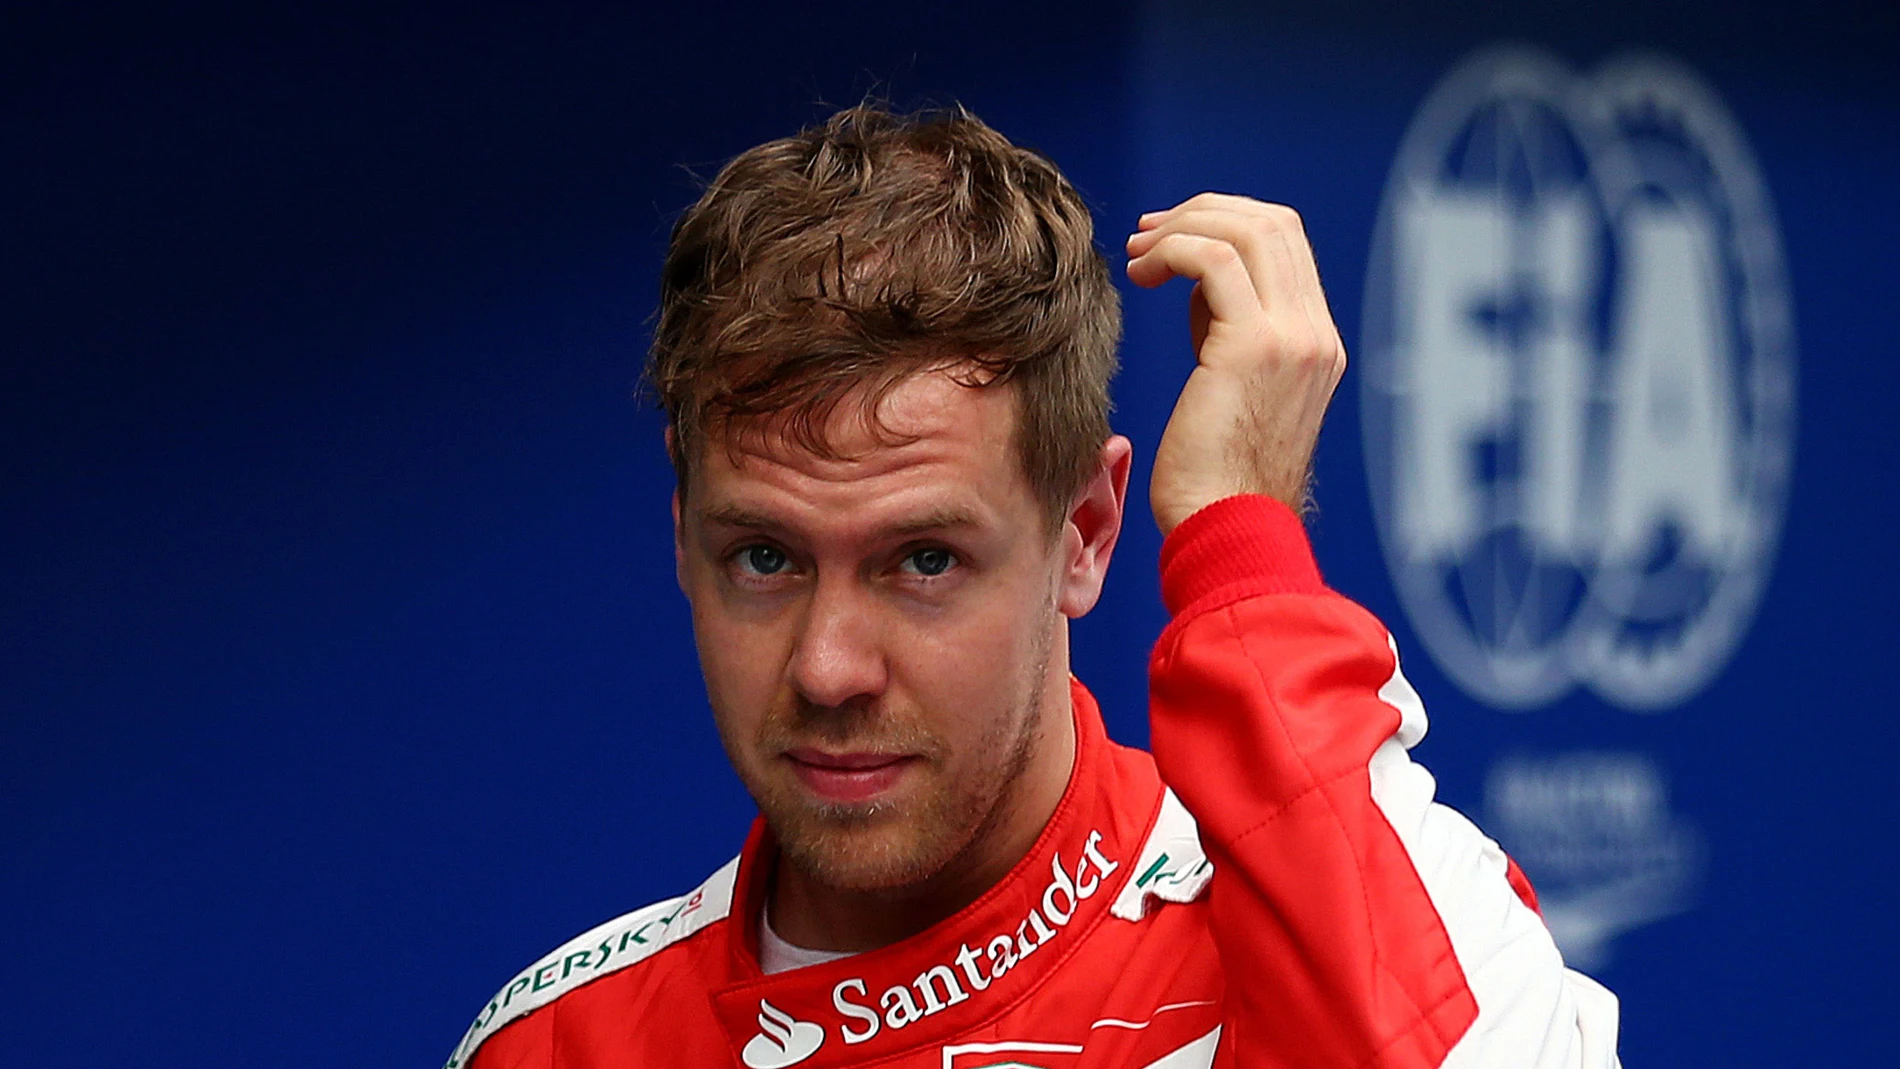 Vettel tras la clasificación de Sepang